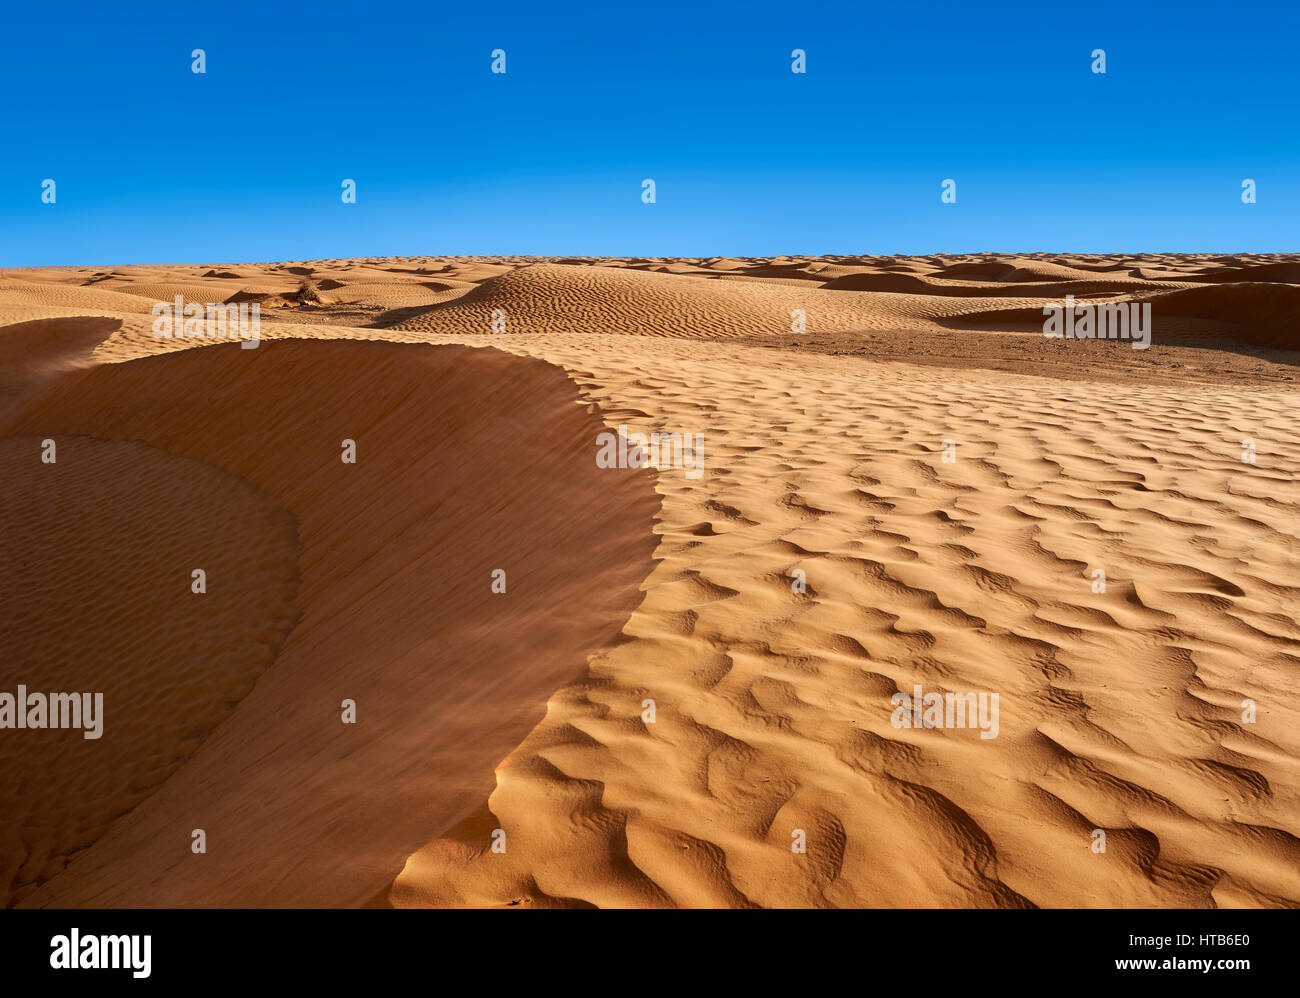 El desierto del Sahara dunas de Erg Oriental cerca del oasis de Ksar Ghilane, Túnez, África Foto de stock